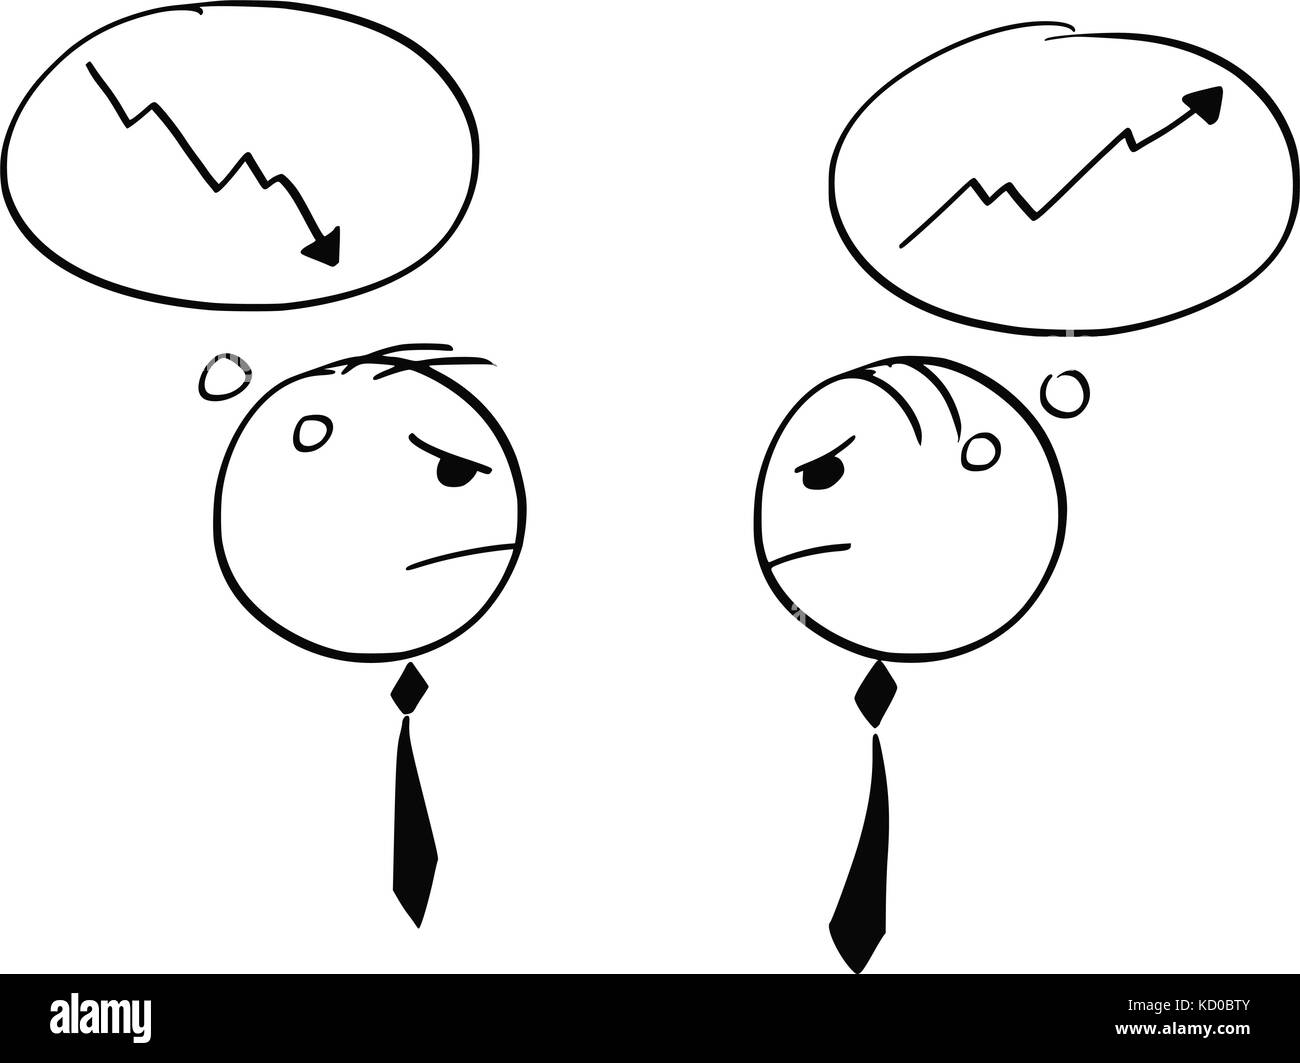 Cartoon stick Mann Abbildung von zwei Geschäftsmann über Wirtschaft Wachstum und Einbruch streiten. Stock Vektor